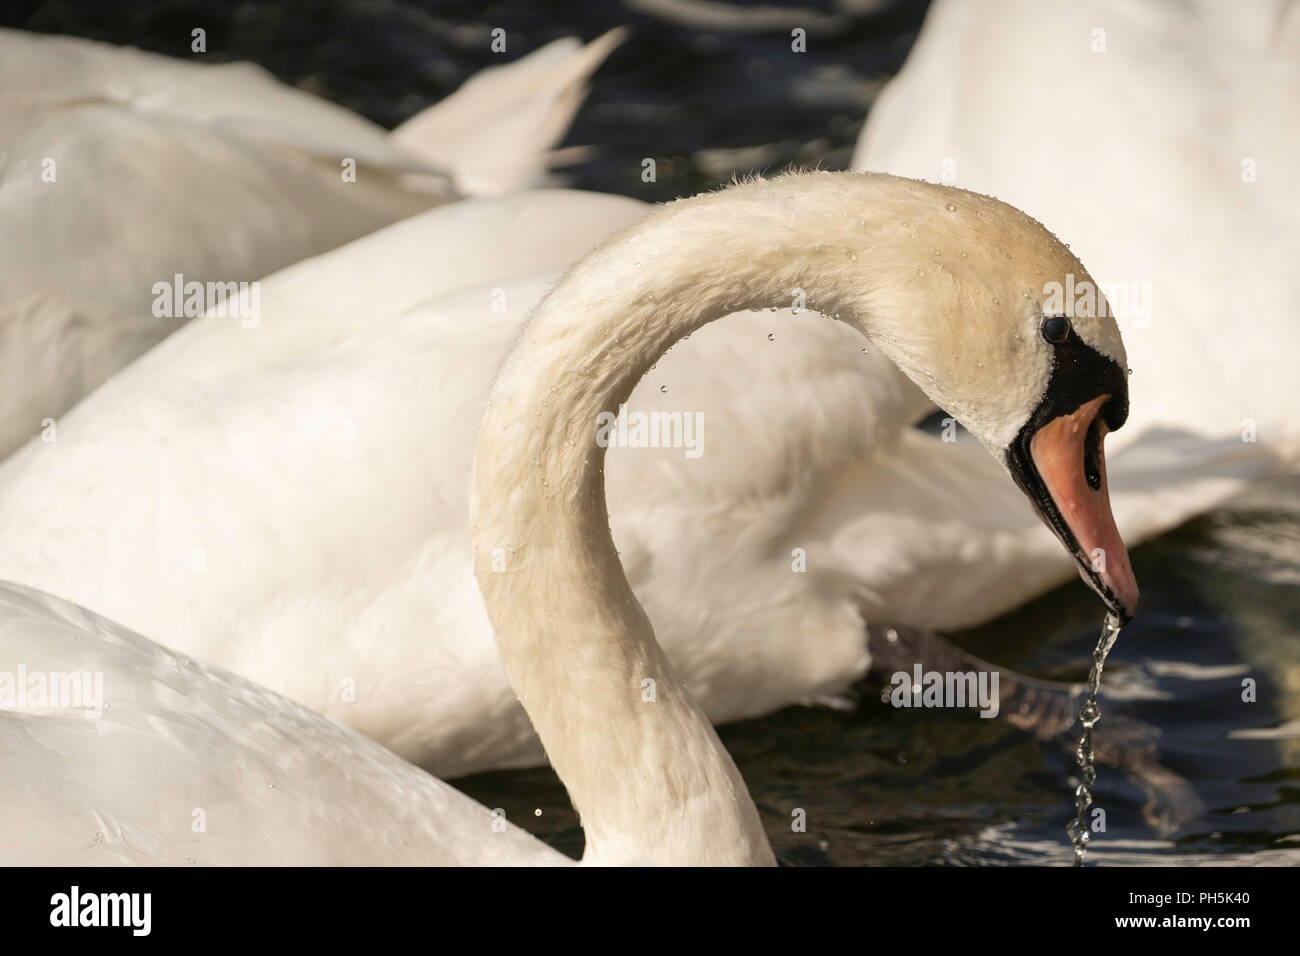 Blanc pur Mute Swan avec des gouttelettes d'eau qui s'écoulent de son bec, Roundhay Park, Upper Lake, Leeds, West Yorkshire, Angleterre, Royaume-Uni. Banque D'Images